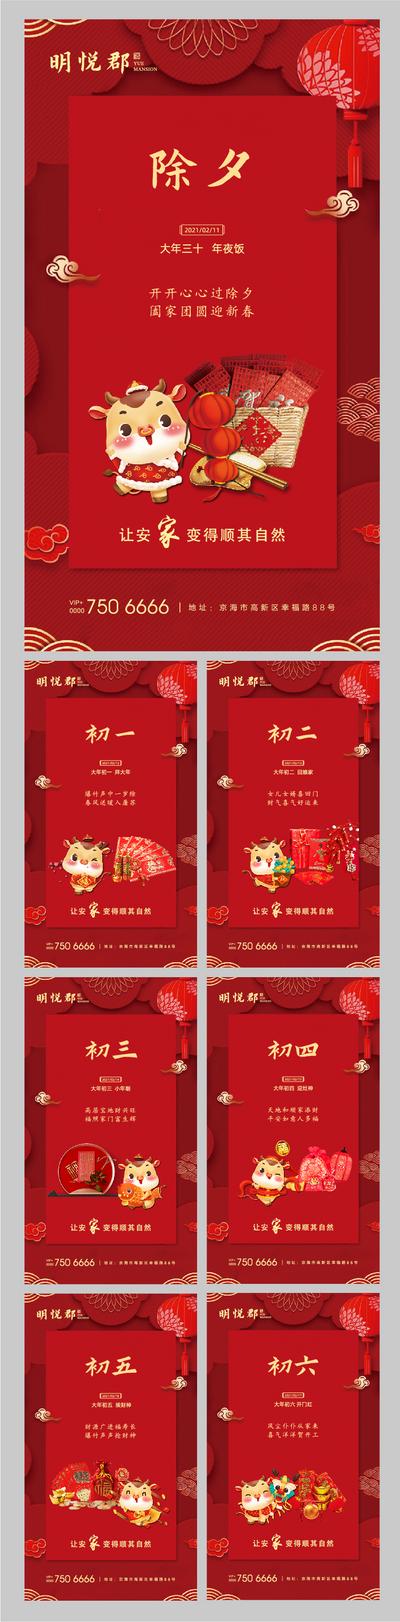 南门网 春节春节系列海报